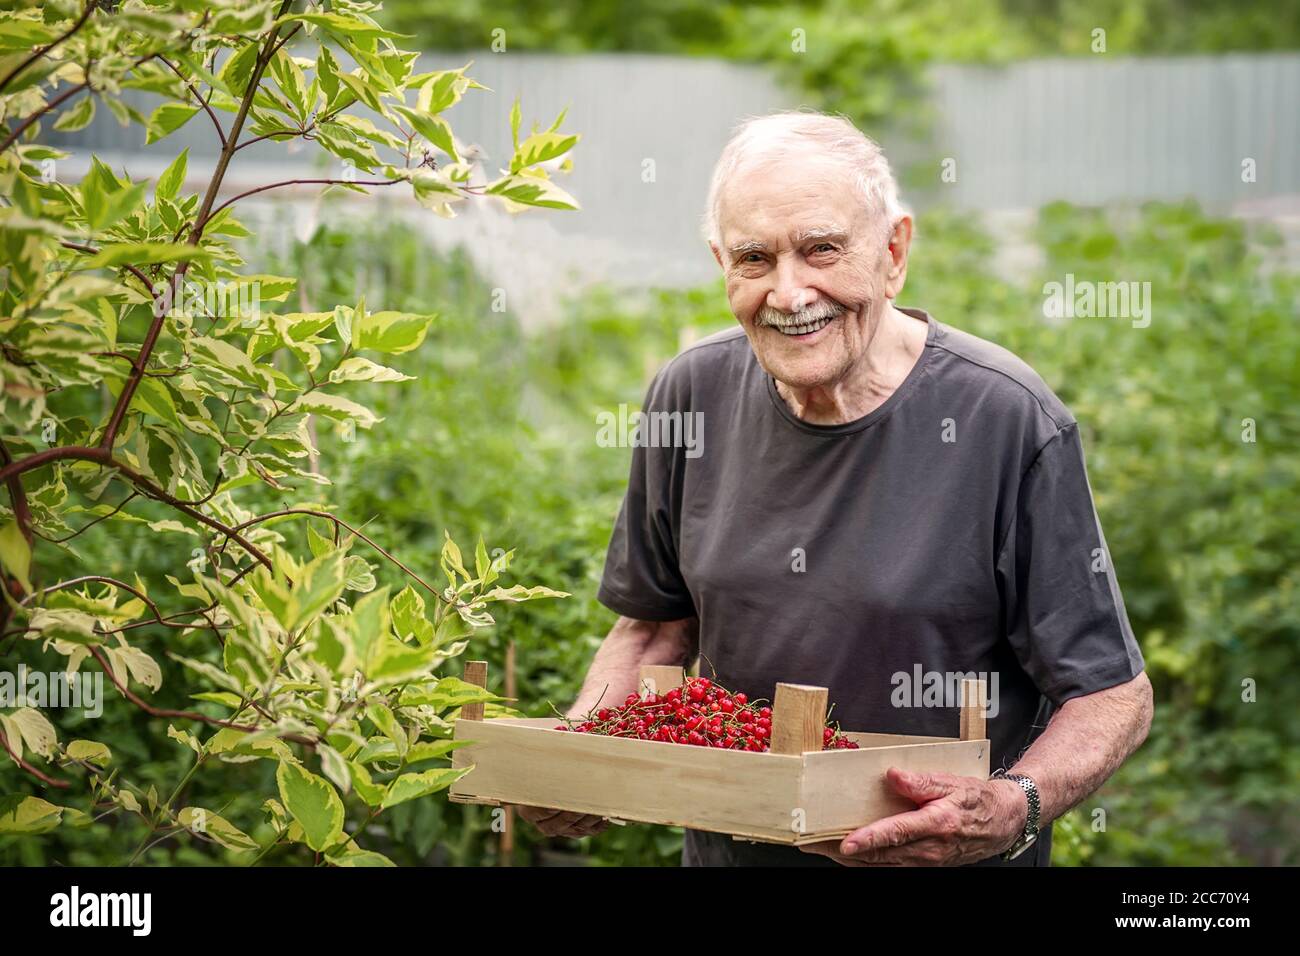 el anciano sostiene una caja de madera con una baya roja. Un viejo de pelo gris está trabajando en el jardín, cosechando cultivos. Feliz abuelo sonríe Foto de stock